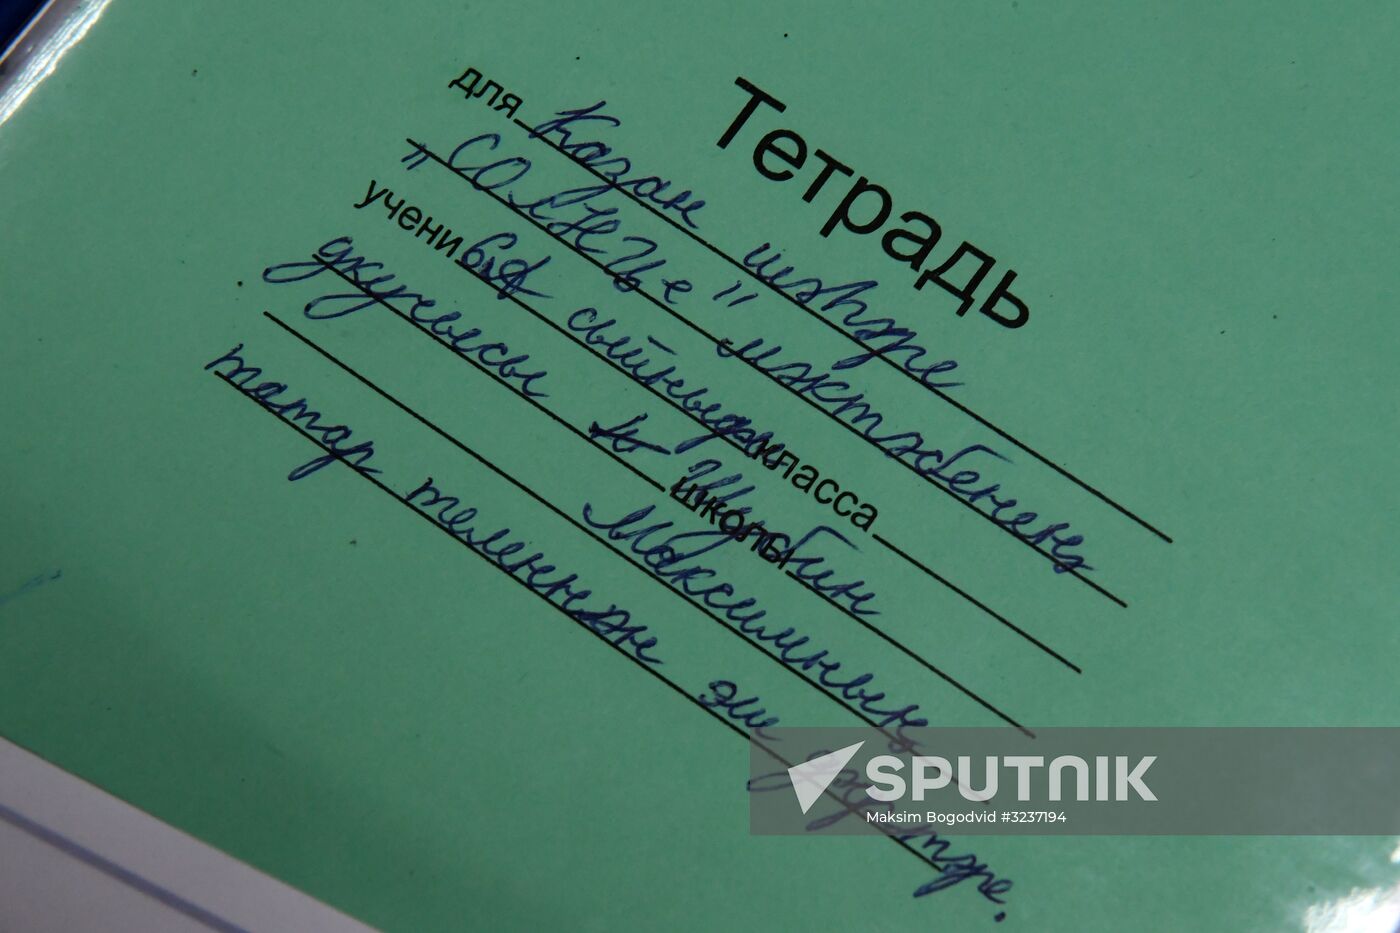 Tatar language taught in Kazan